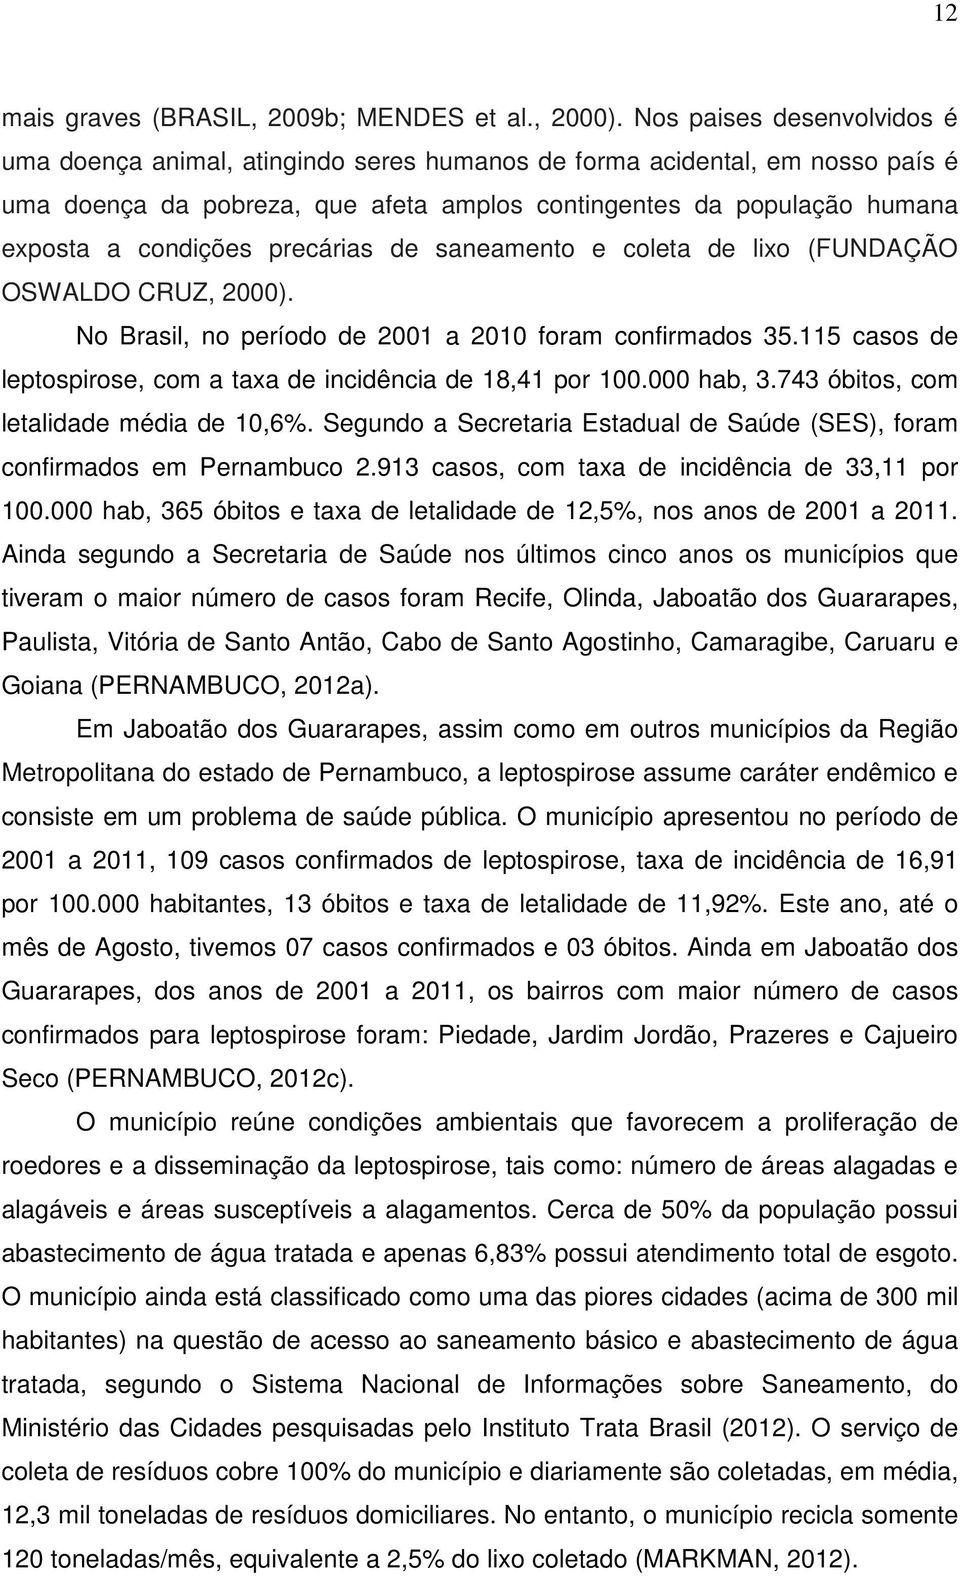 precárias de saneamento e coleta de lixo (FUNDAÇÃO OSWALDO CRUZ, 2000). No Brasil, no período de 2001 a 2010 foram confirmados 35.115 casos de leptospirose, com a taxa de incidência de 18,41 por 100.